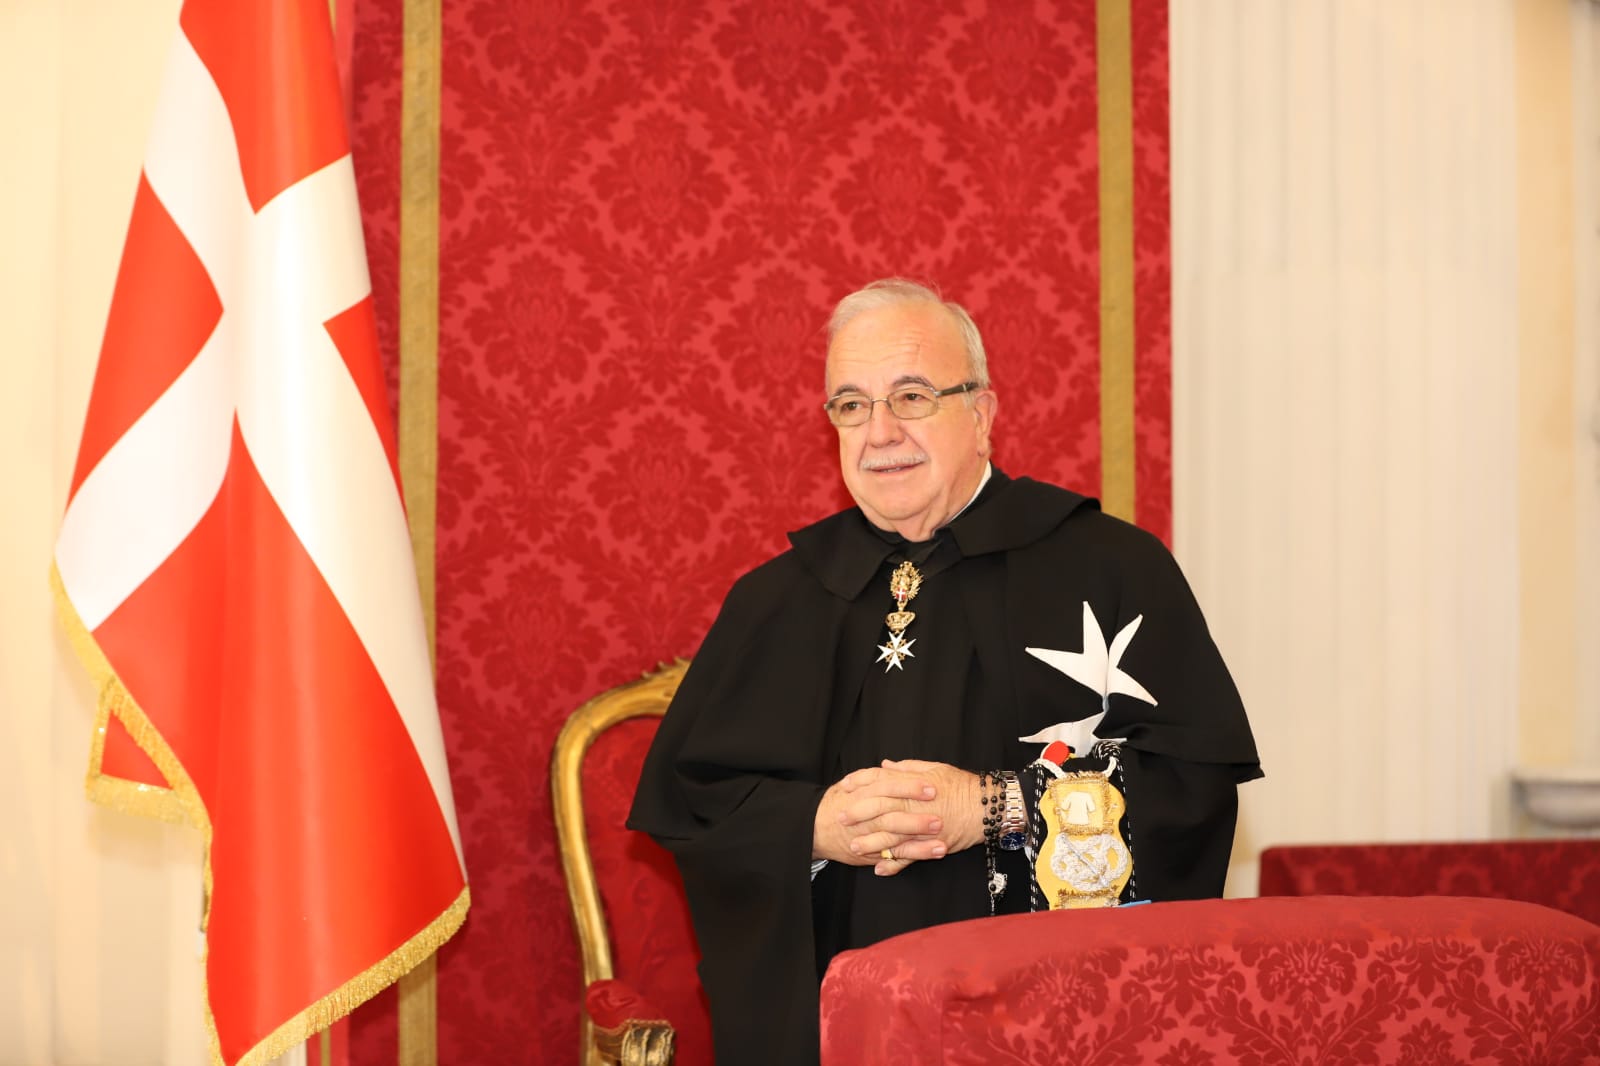 Fra’ Marco Luzzago élu Lieutenant de Grand Maître de l’Ordre souverain de Malte